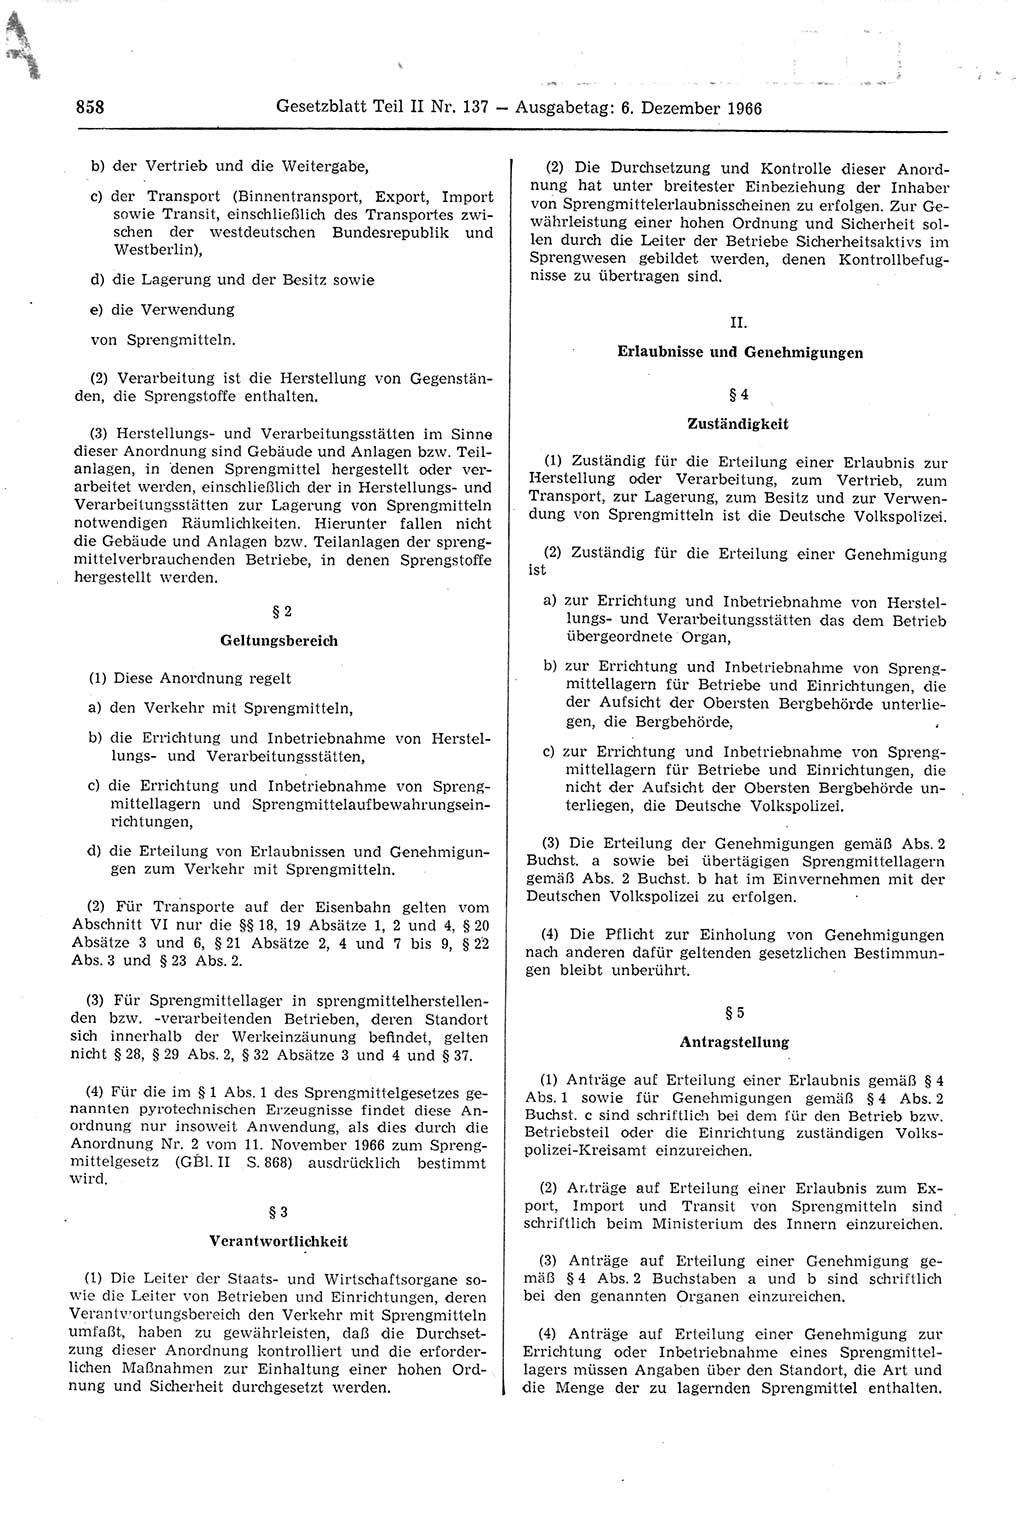 Gesetzblatt (GBl.) der Deutschen Demokratischen Republik (DDR) Teil ⅠⅠ 1966, Seite 858 (GBl. DDR ⅠⅠ 1966, S. 858)